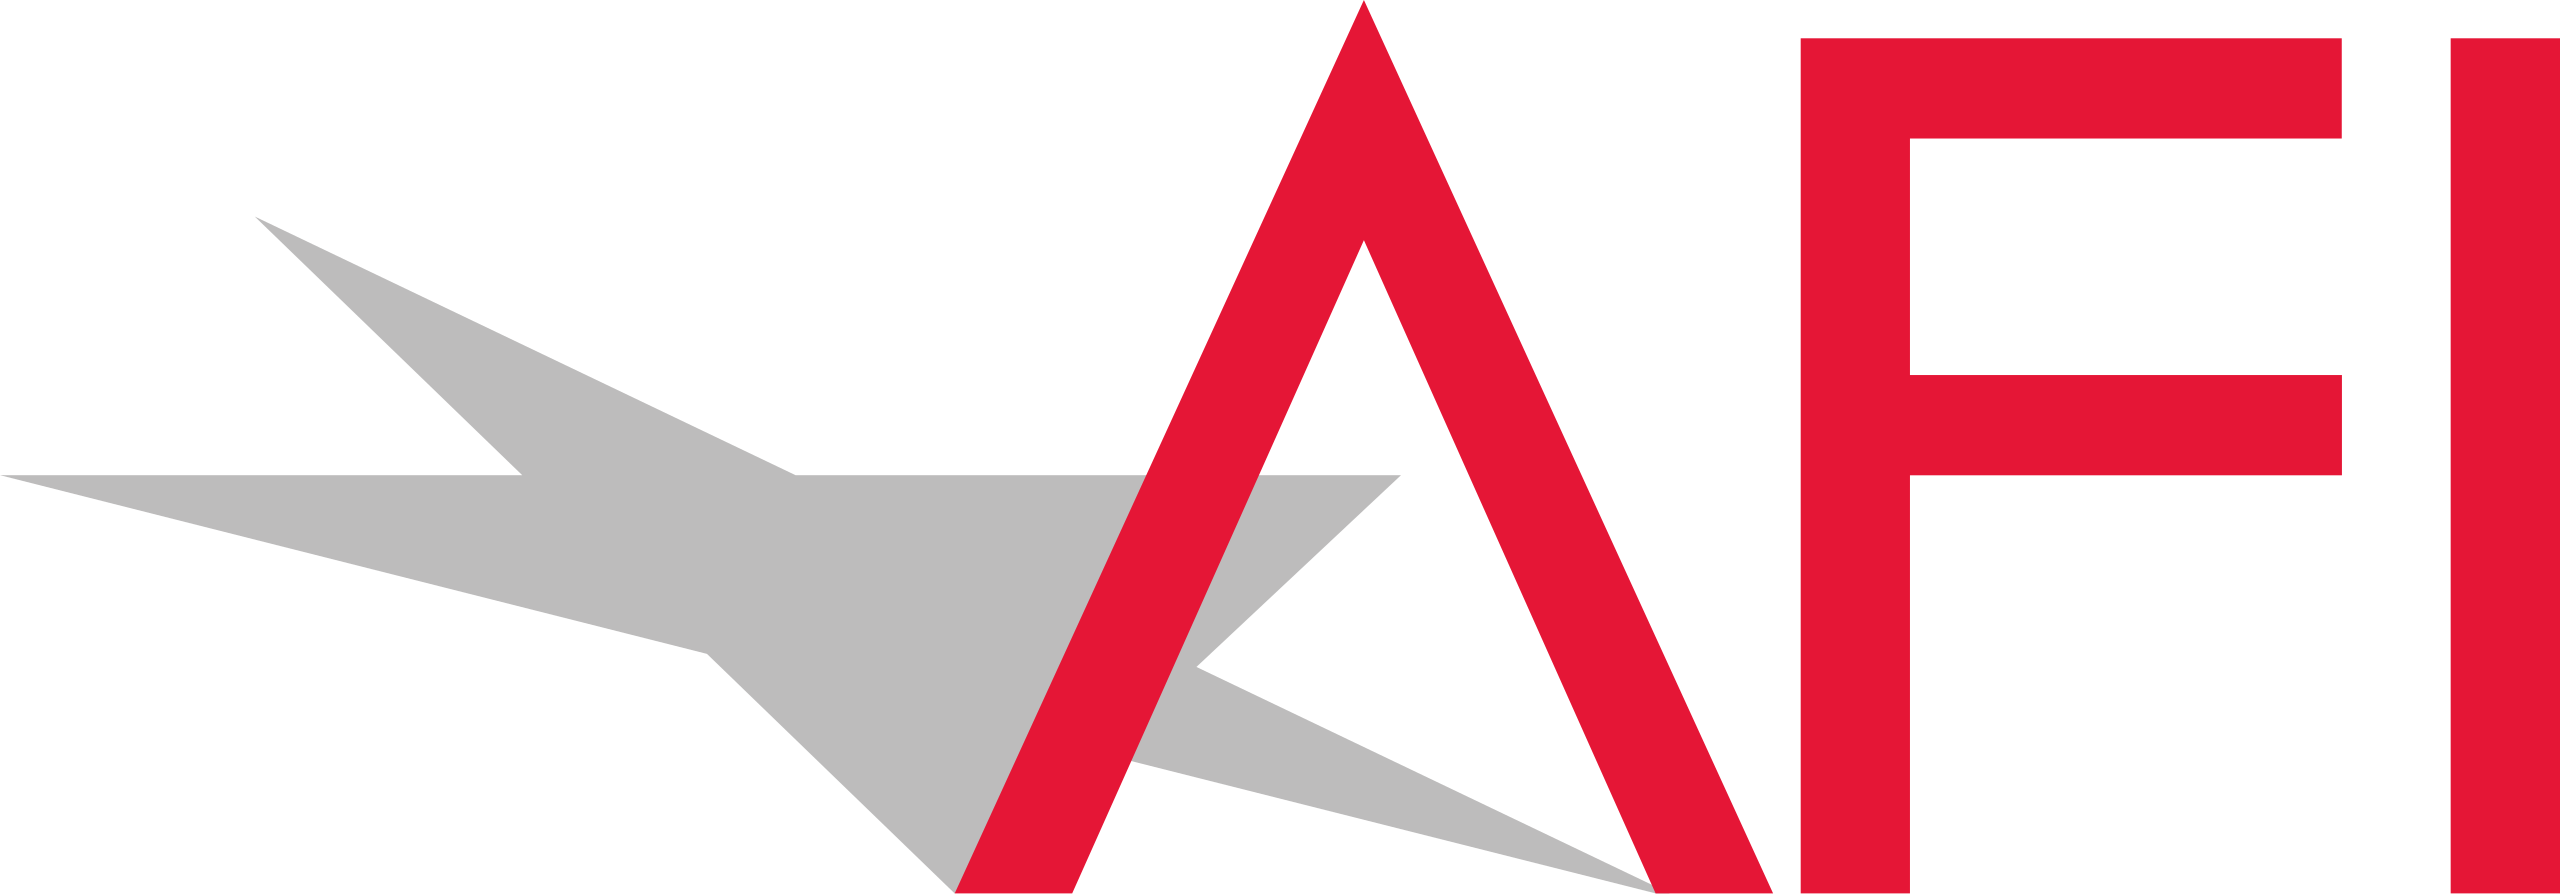 American_Film_Institute_(AFI)_logo